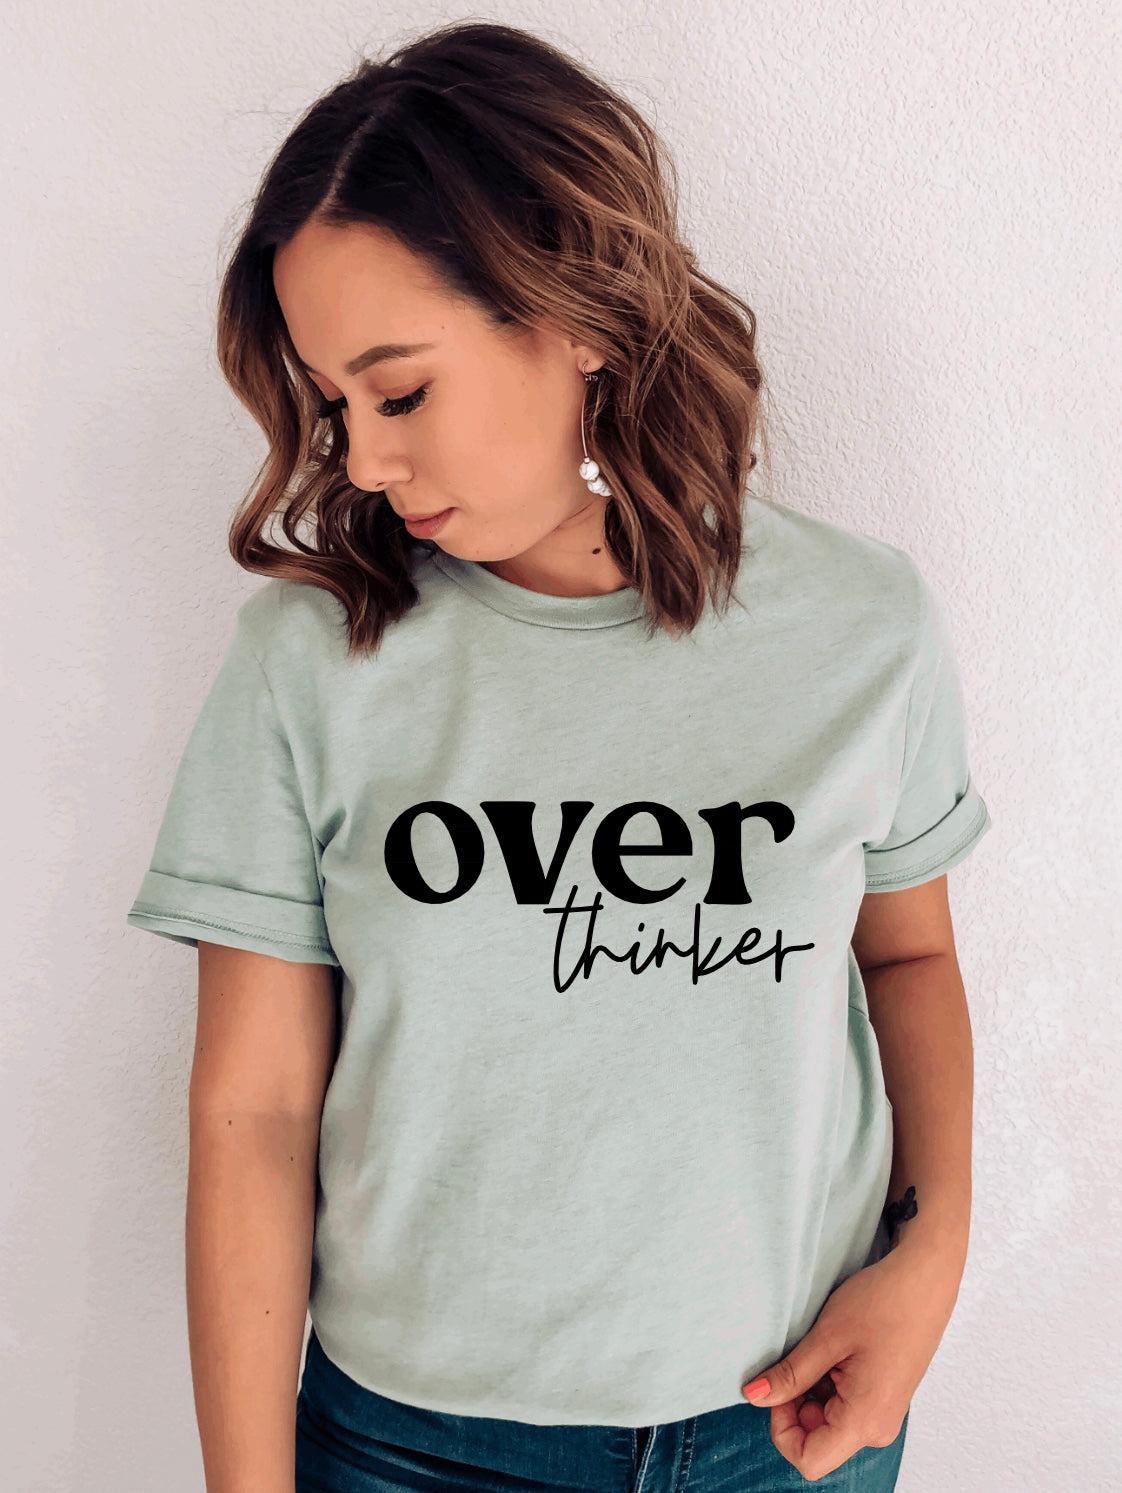 Over thinker t-shirt 